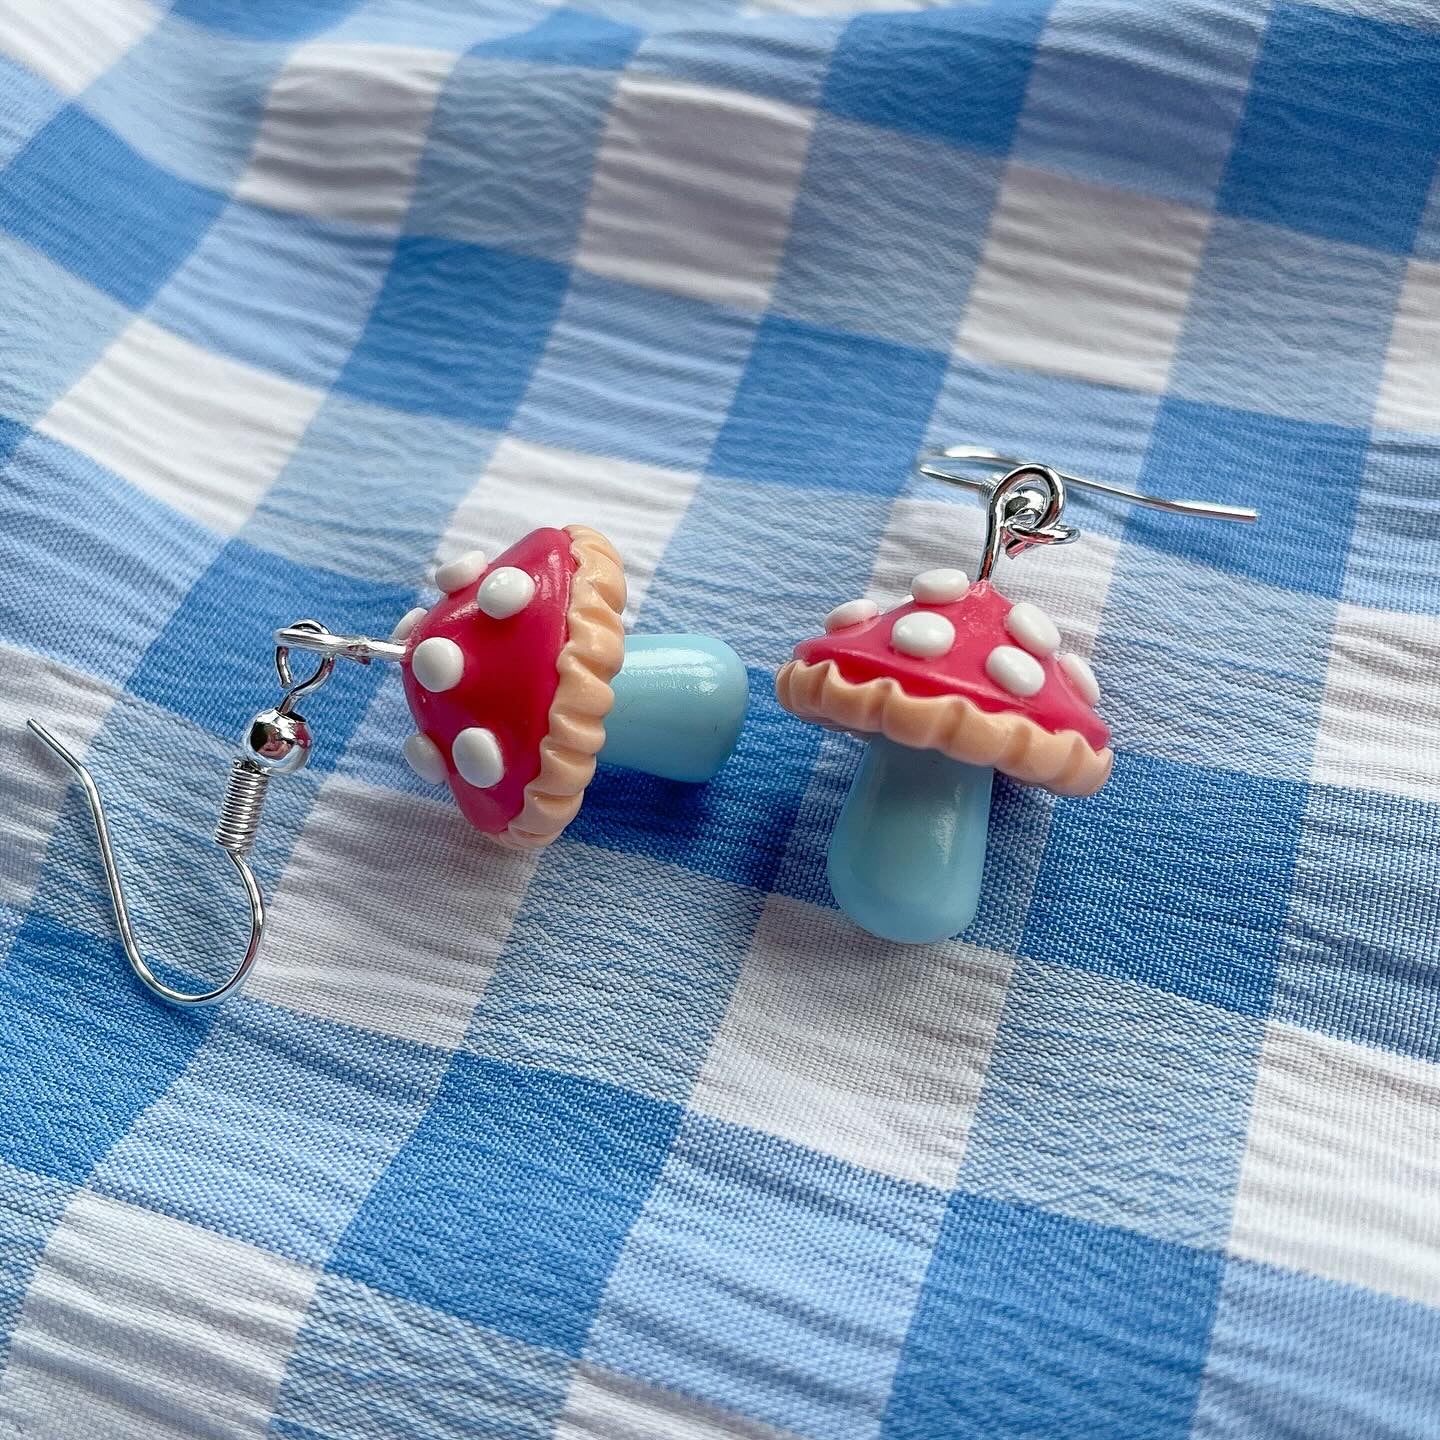 Blue Stem Mushrooms - Earrings Only